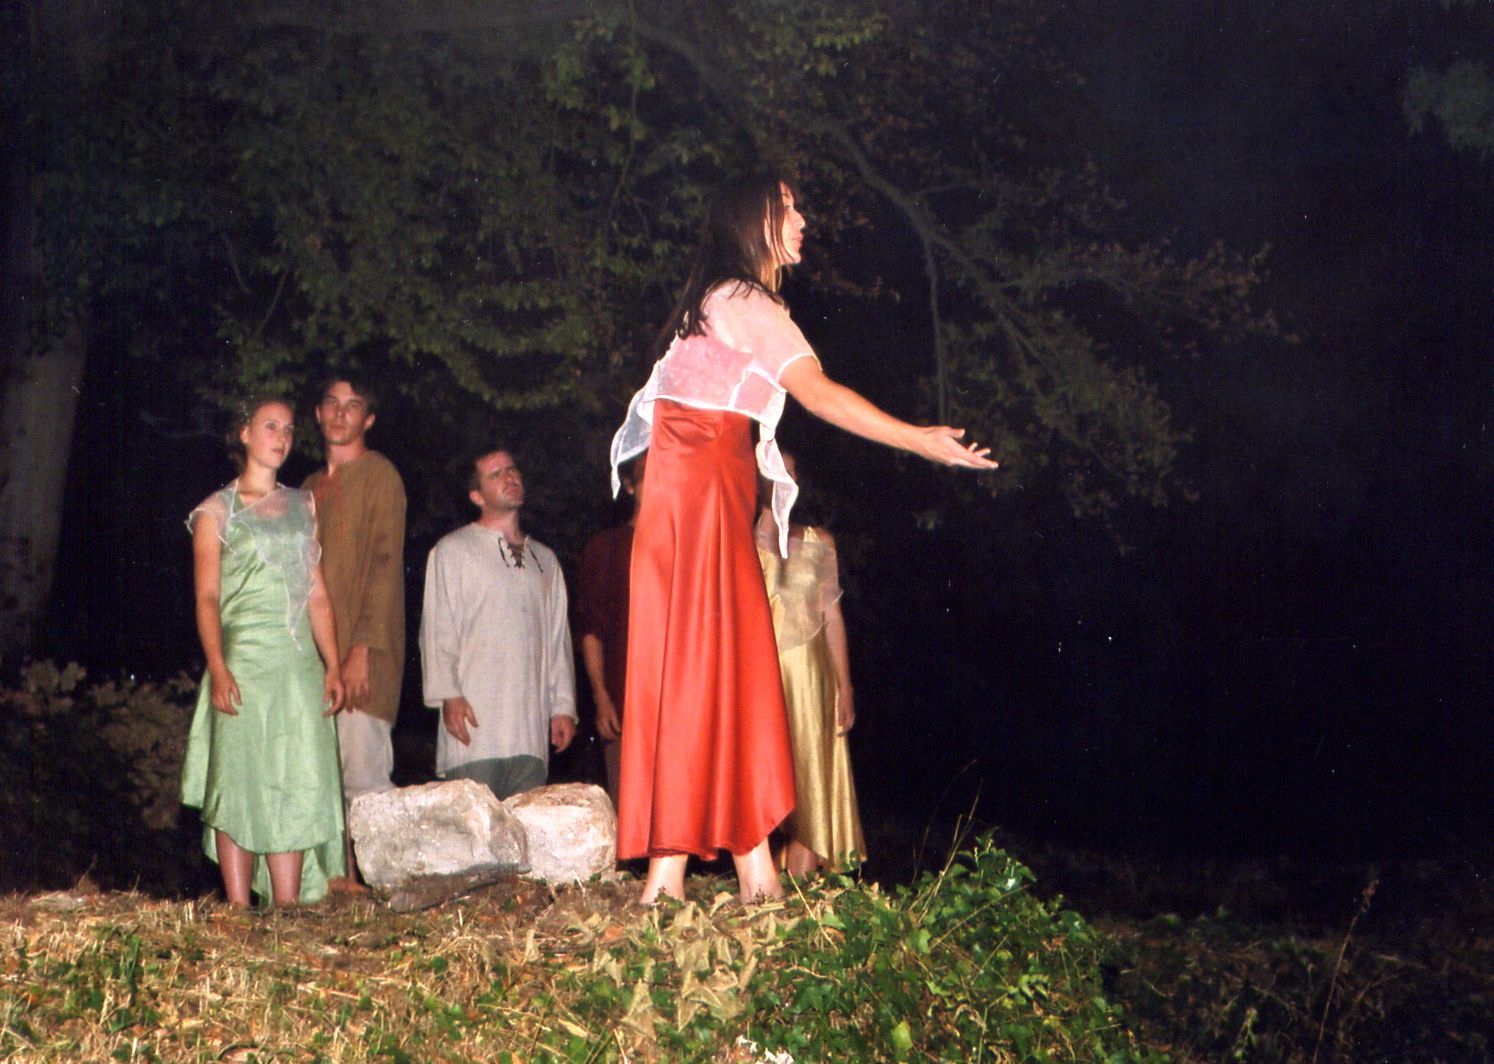 Premier spectacle des Mattagumber au château de Ferrette, les 20-21-27-28 août 2003.
En trois tableaux : 
I. La journée de travail
II. Le crépuscule des elfes
III. La nuit des sorcières